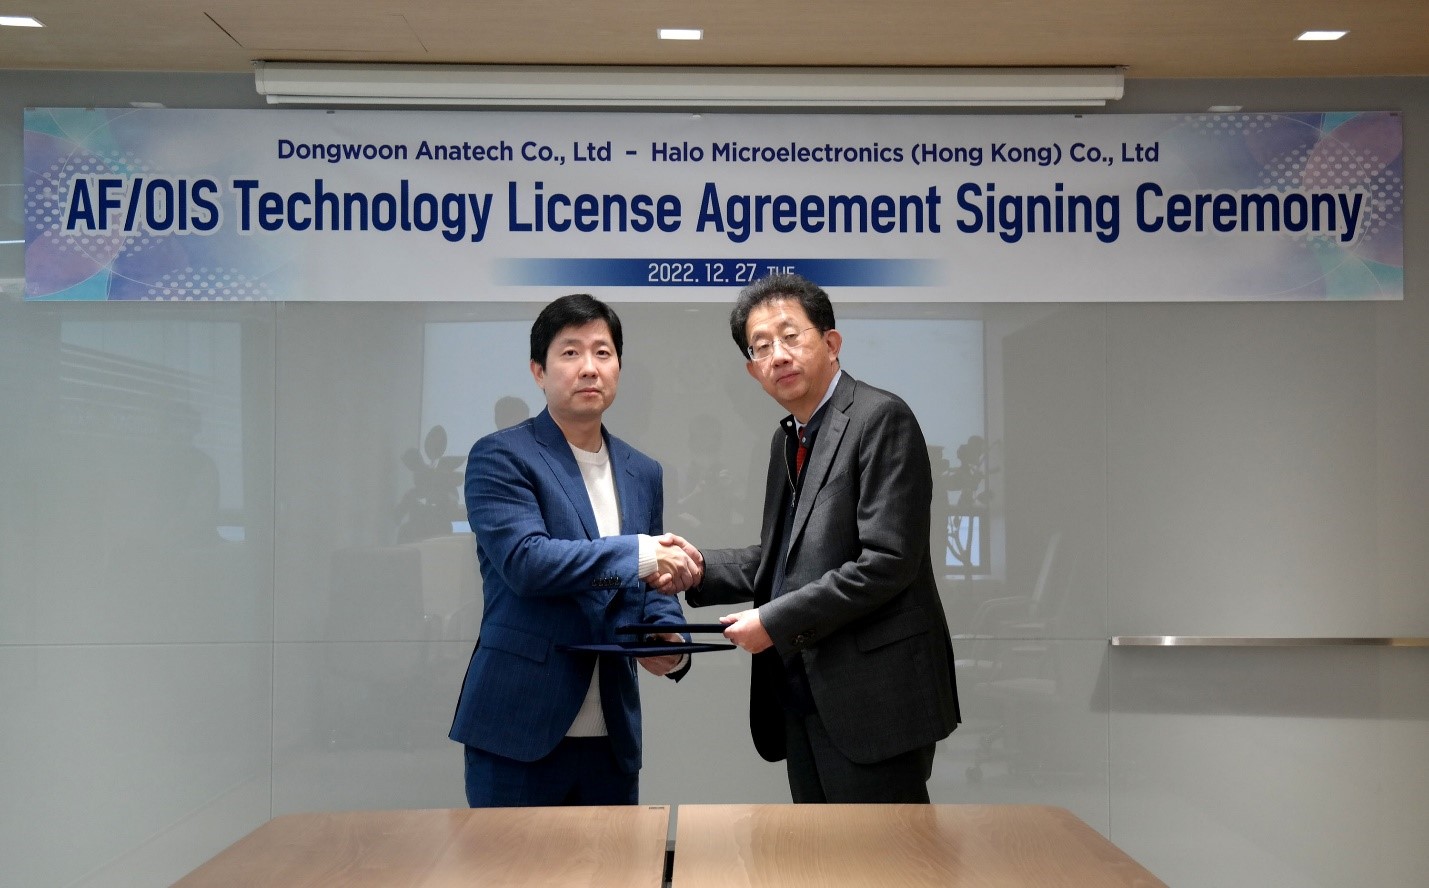 香港希荻微与韩国动运 签署《自动对焦和光学防抖技术许可协议》